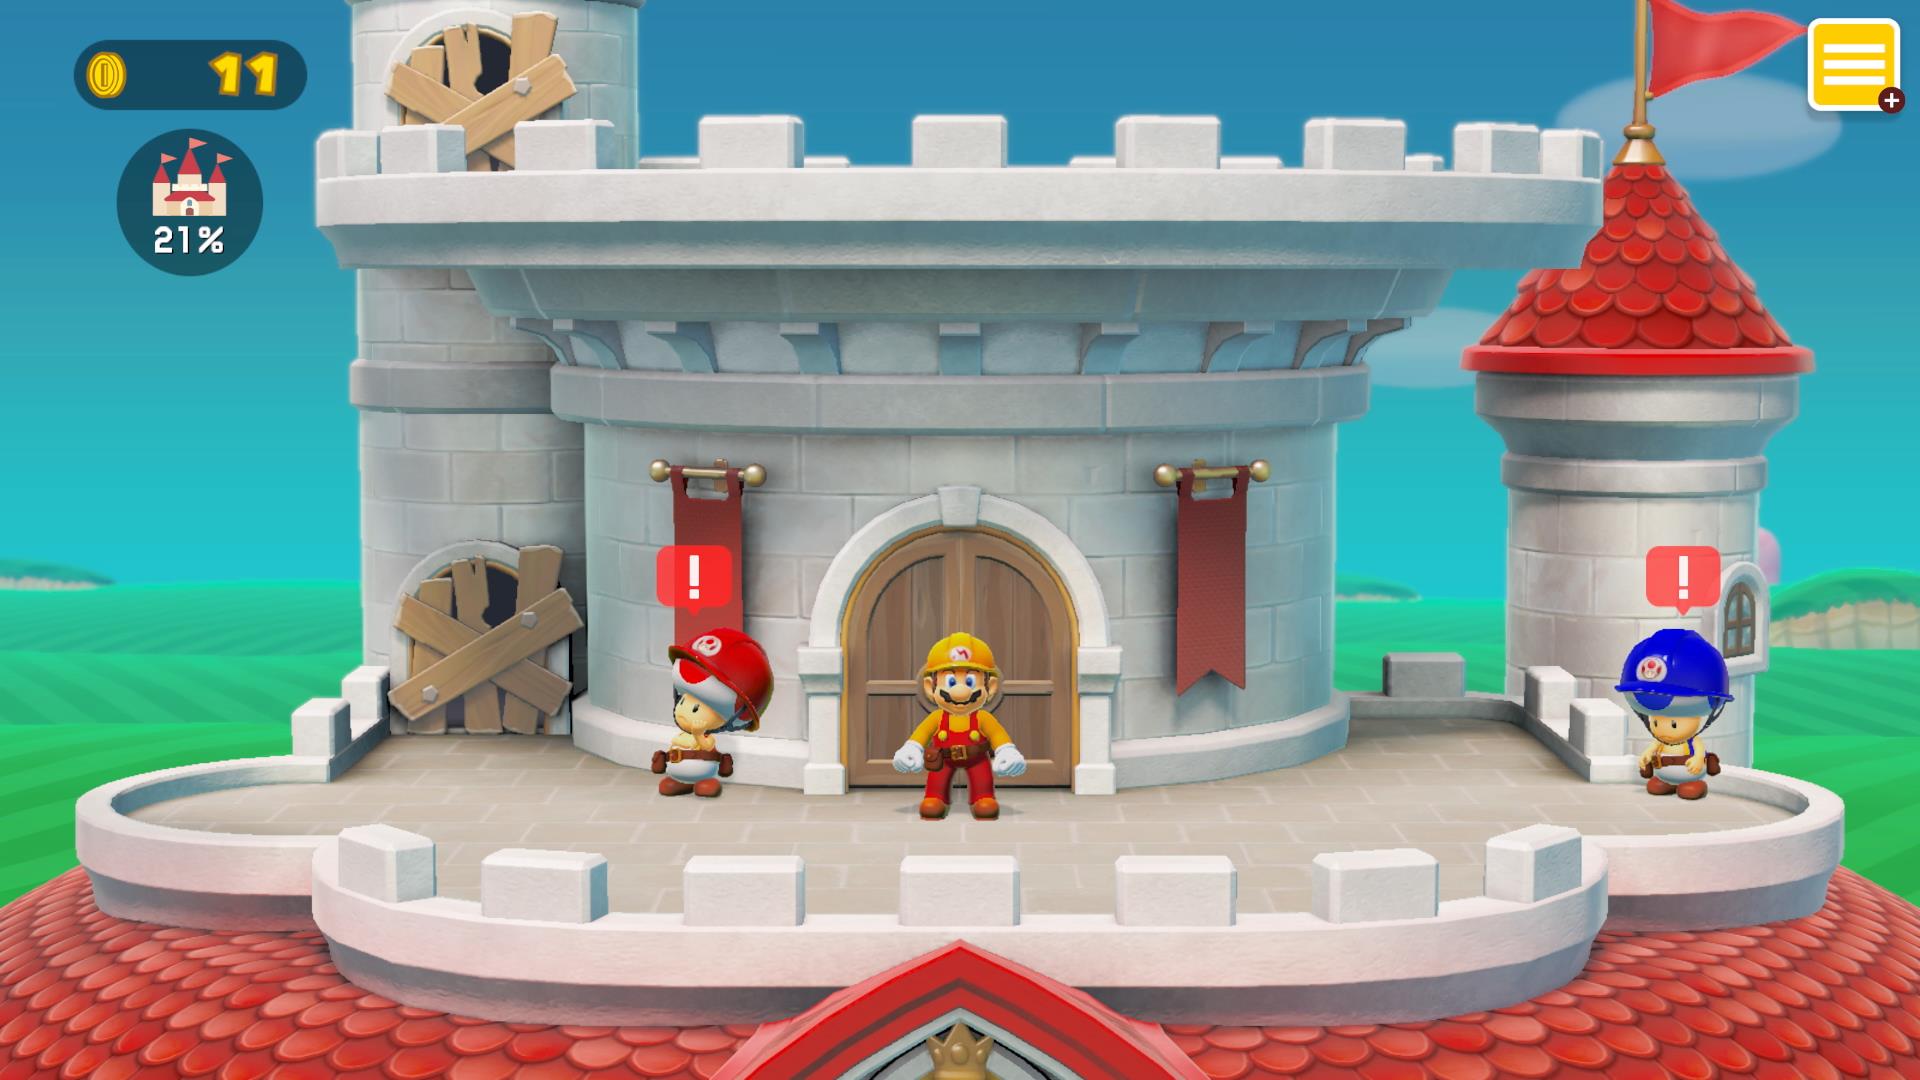 Super Mario Maker 2 é o maior lançamento da Nintendo em 2019, no Reino  Unido